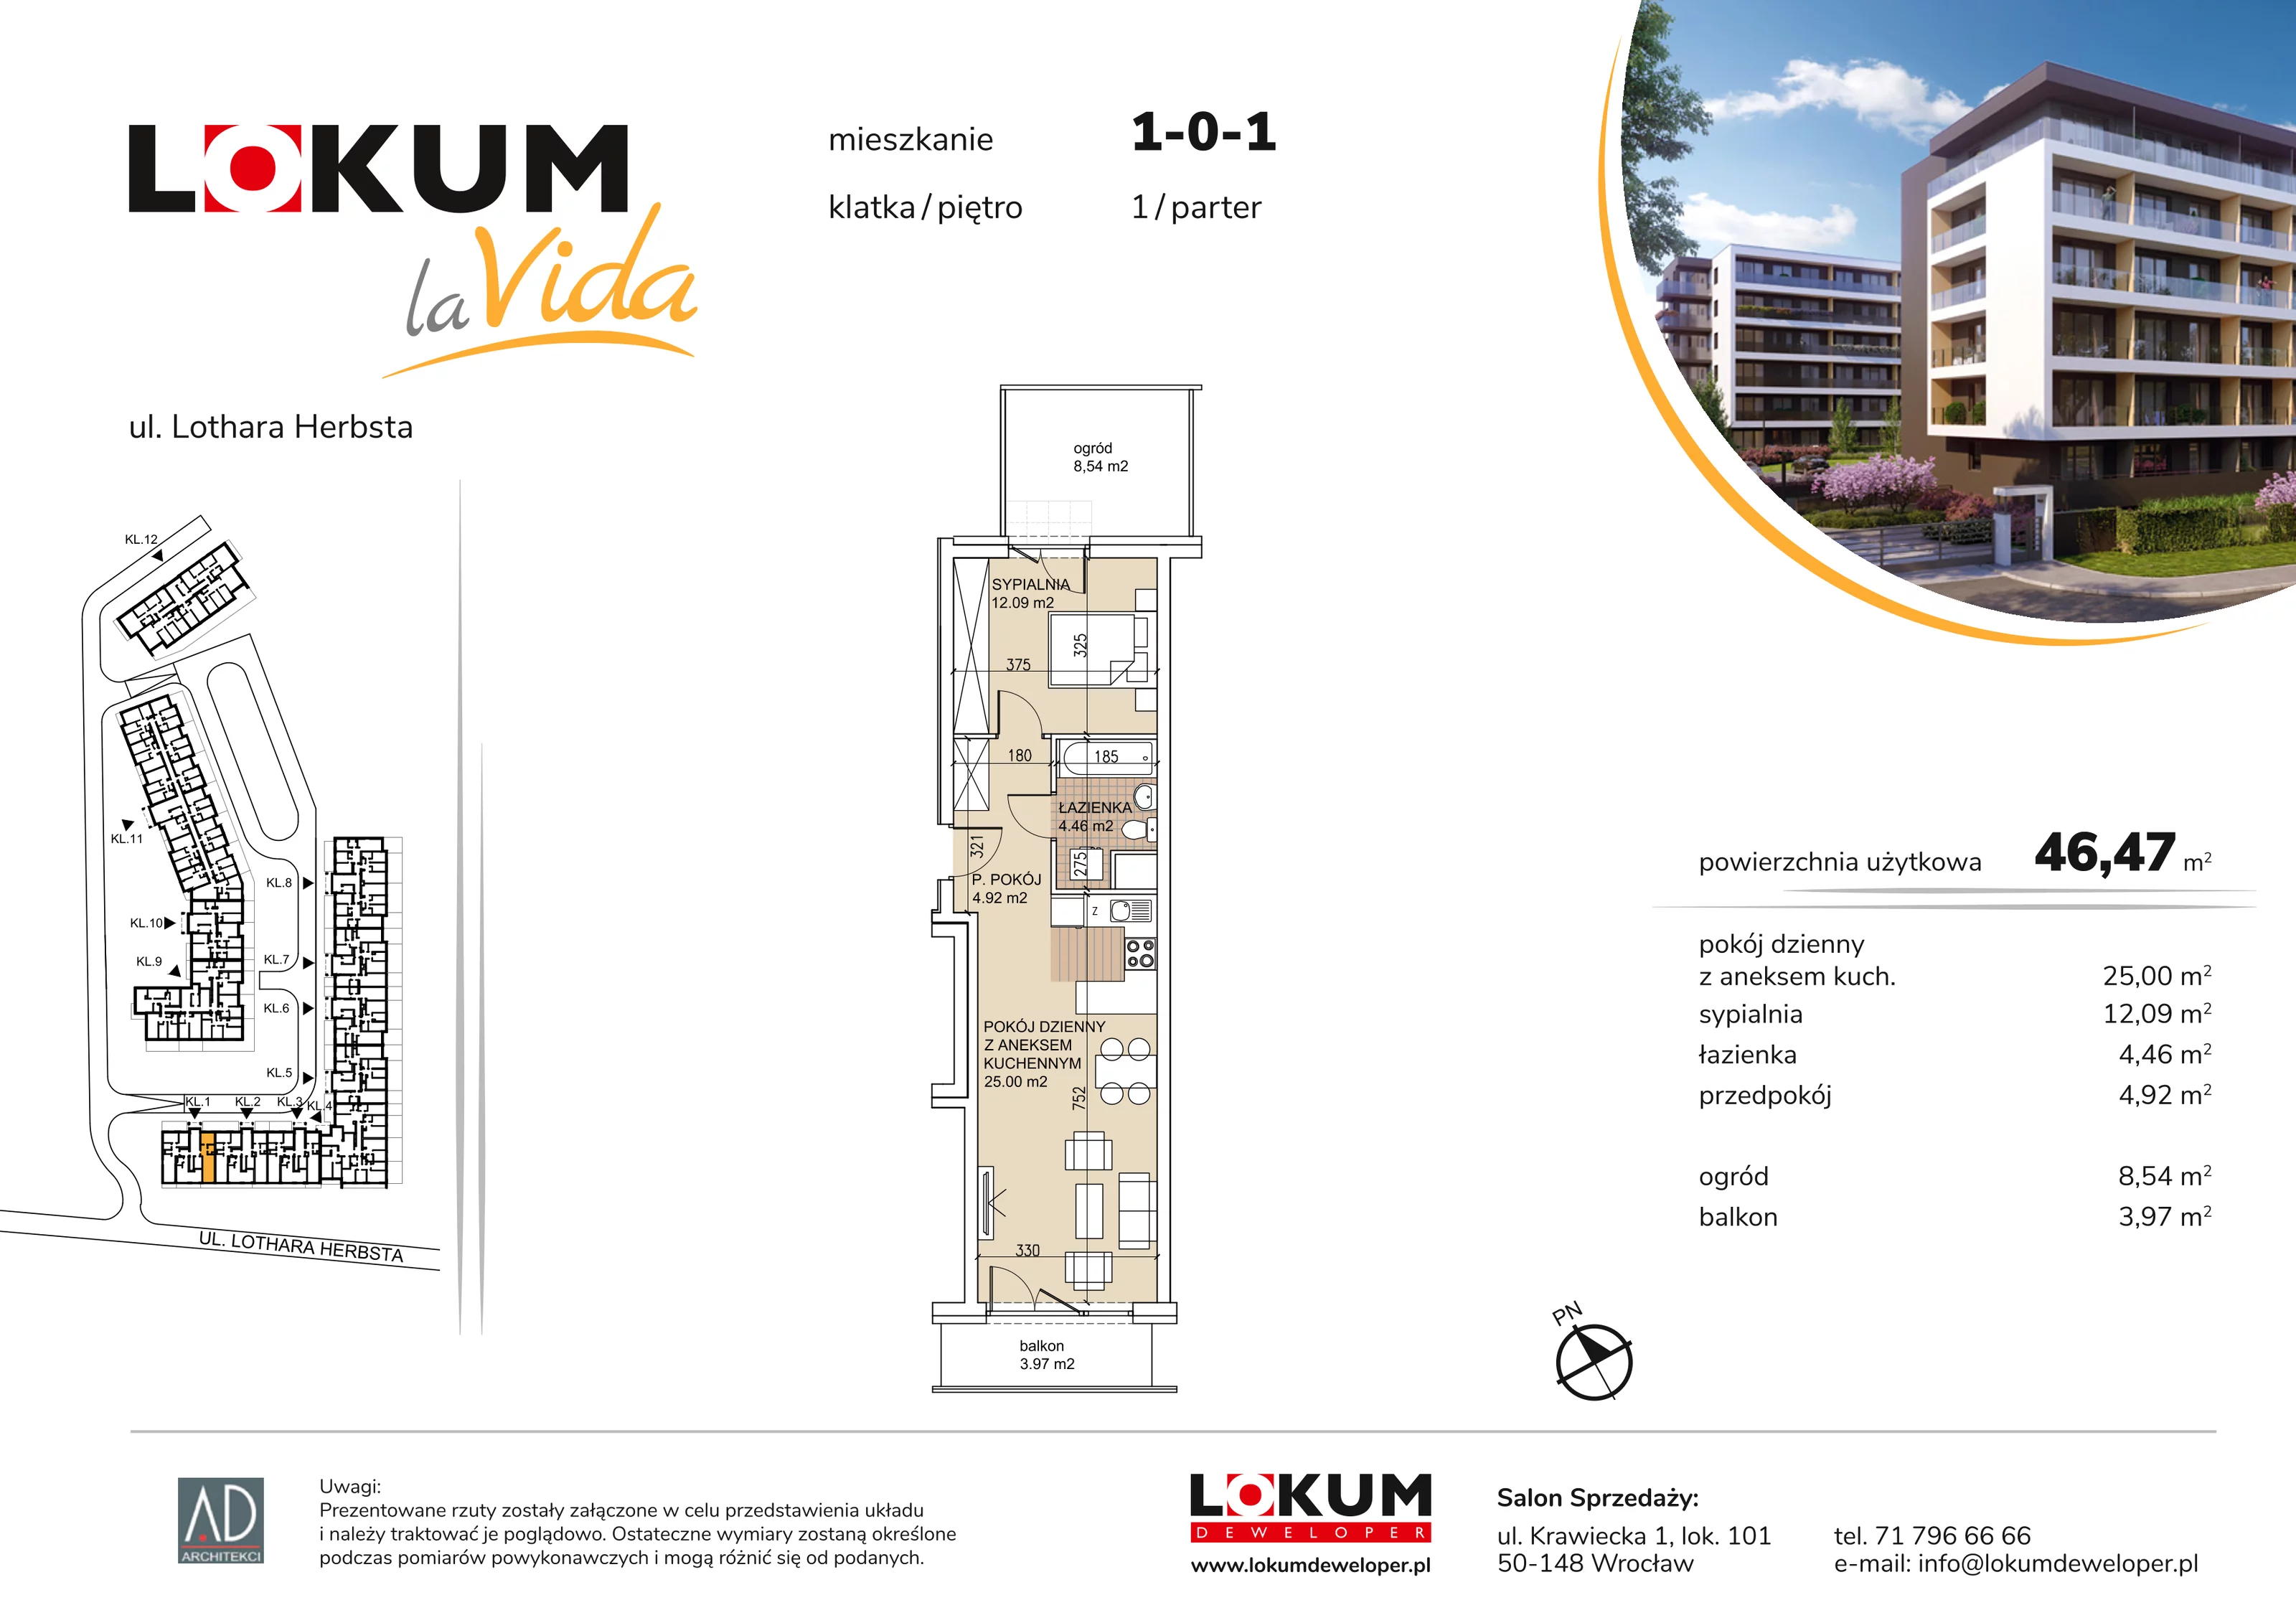 Mieszkanie 46,47 m², parter, oferta nr 1-0-1, Lokum la Vida, Wrocław, Sołtysowice, ul. Lothara Herbsta